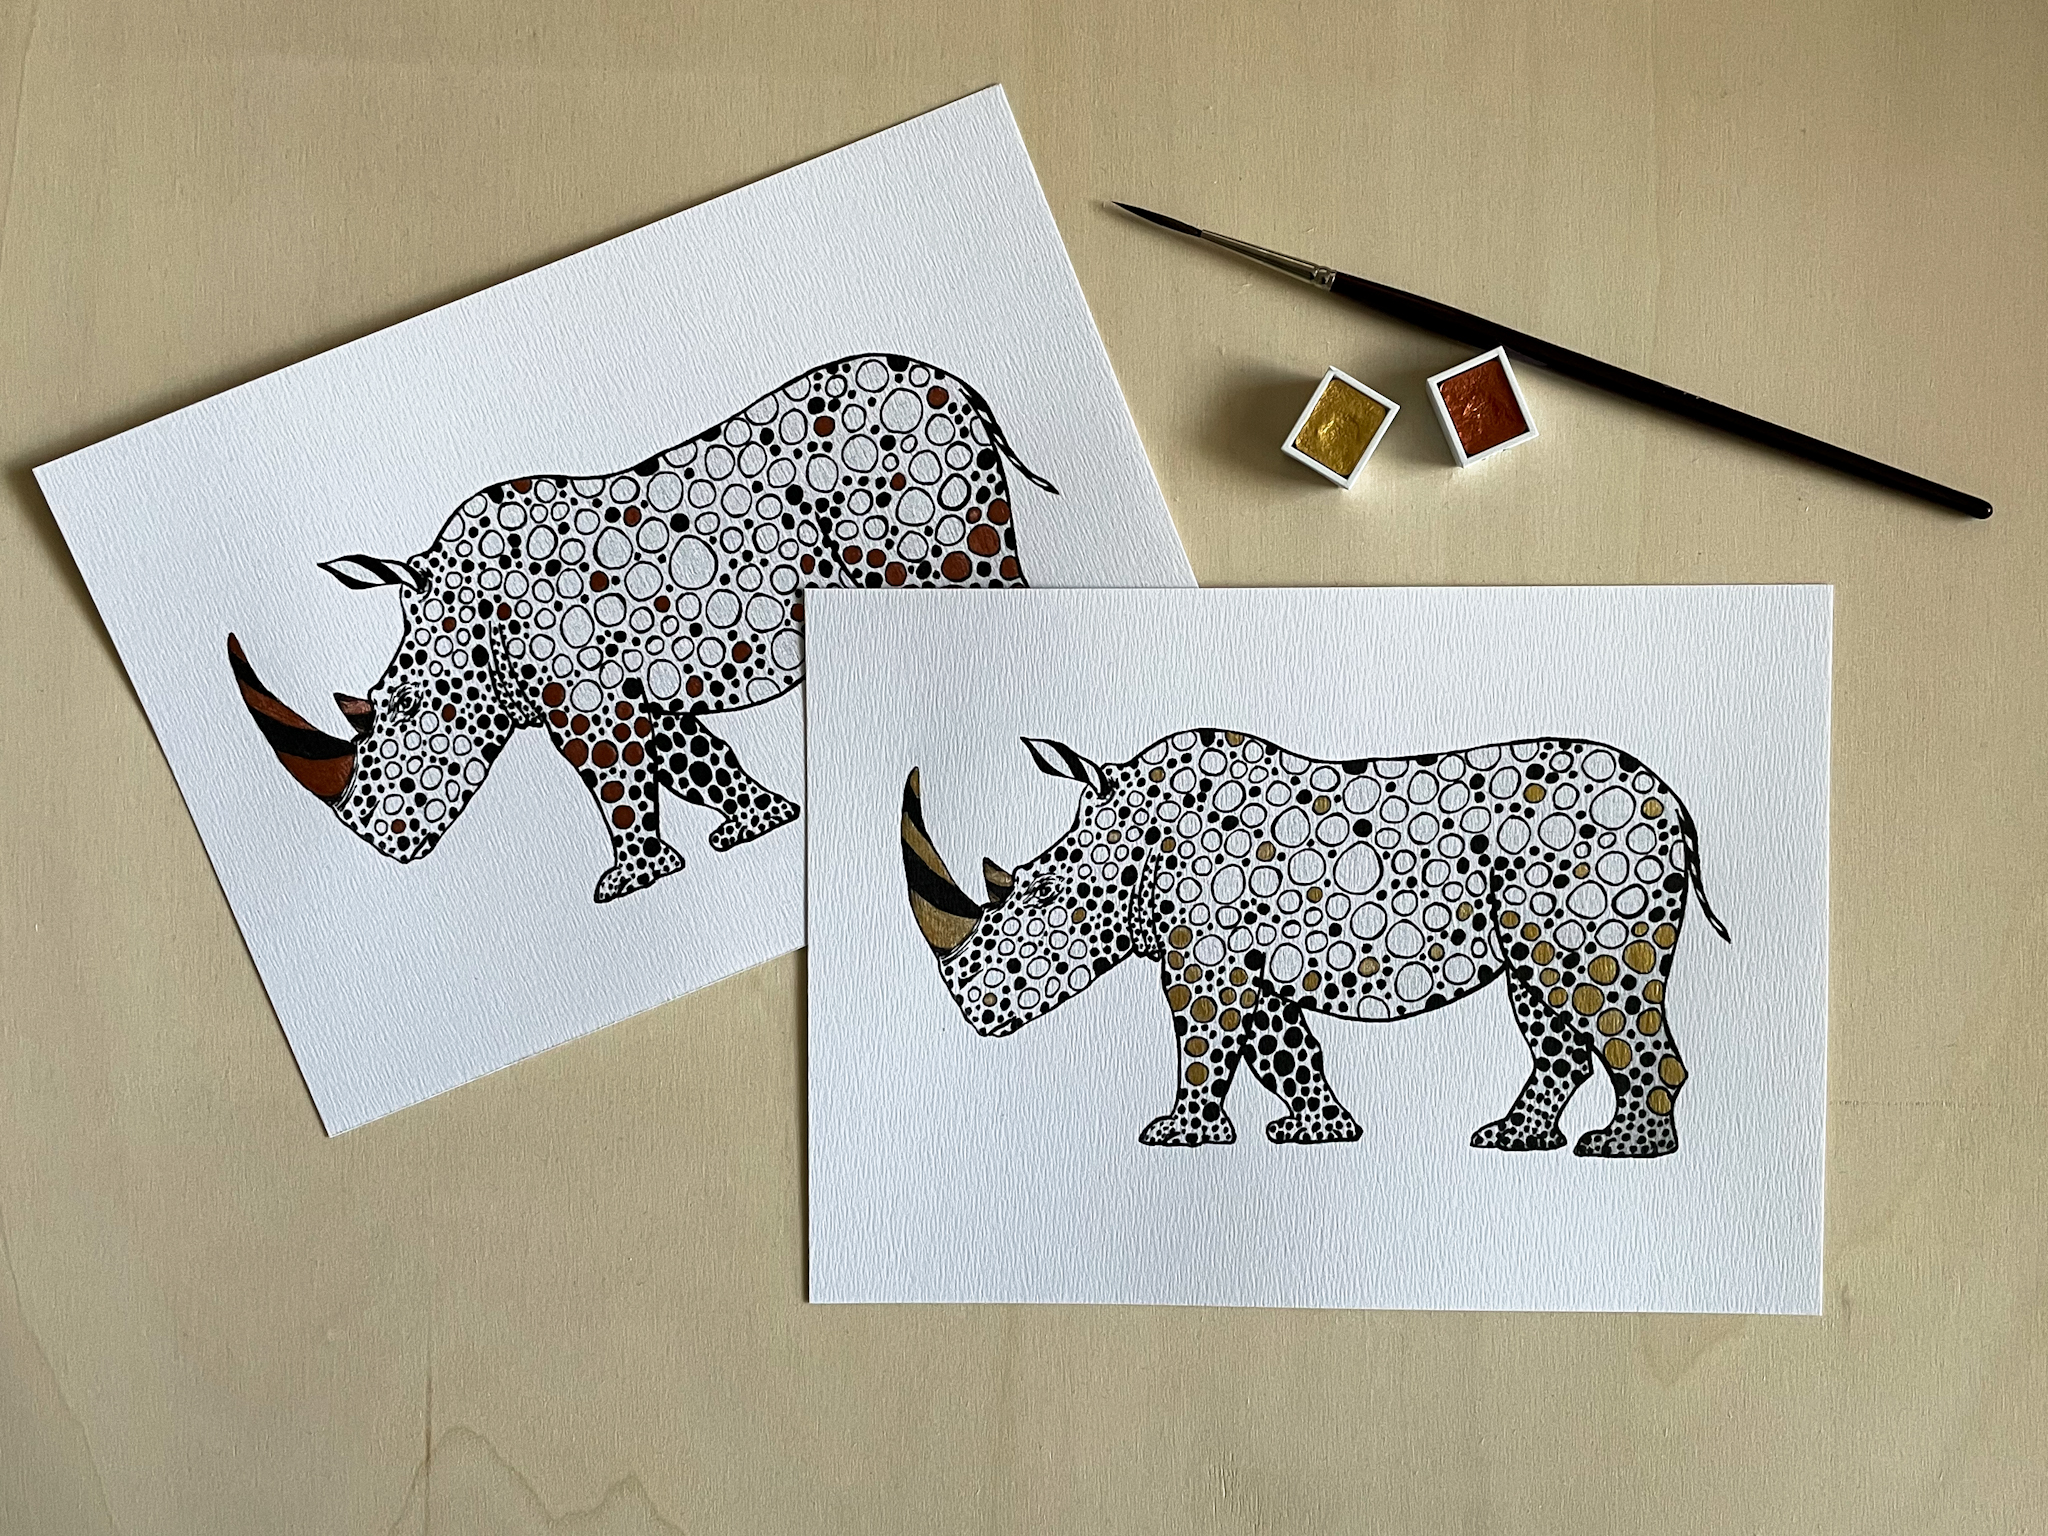 Nosorožec linerem, detaily dozdobené měděným a zlatým akvarelem